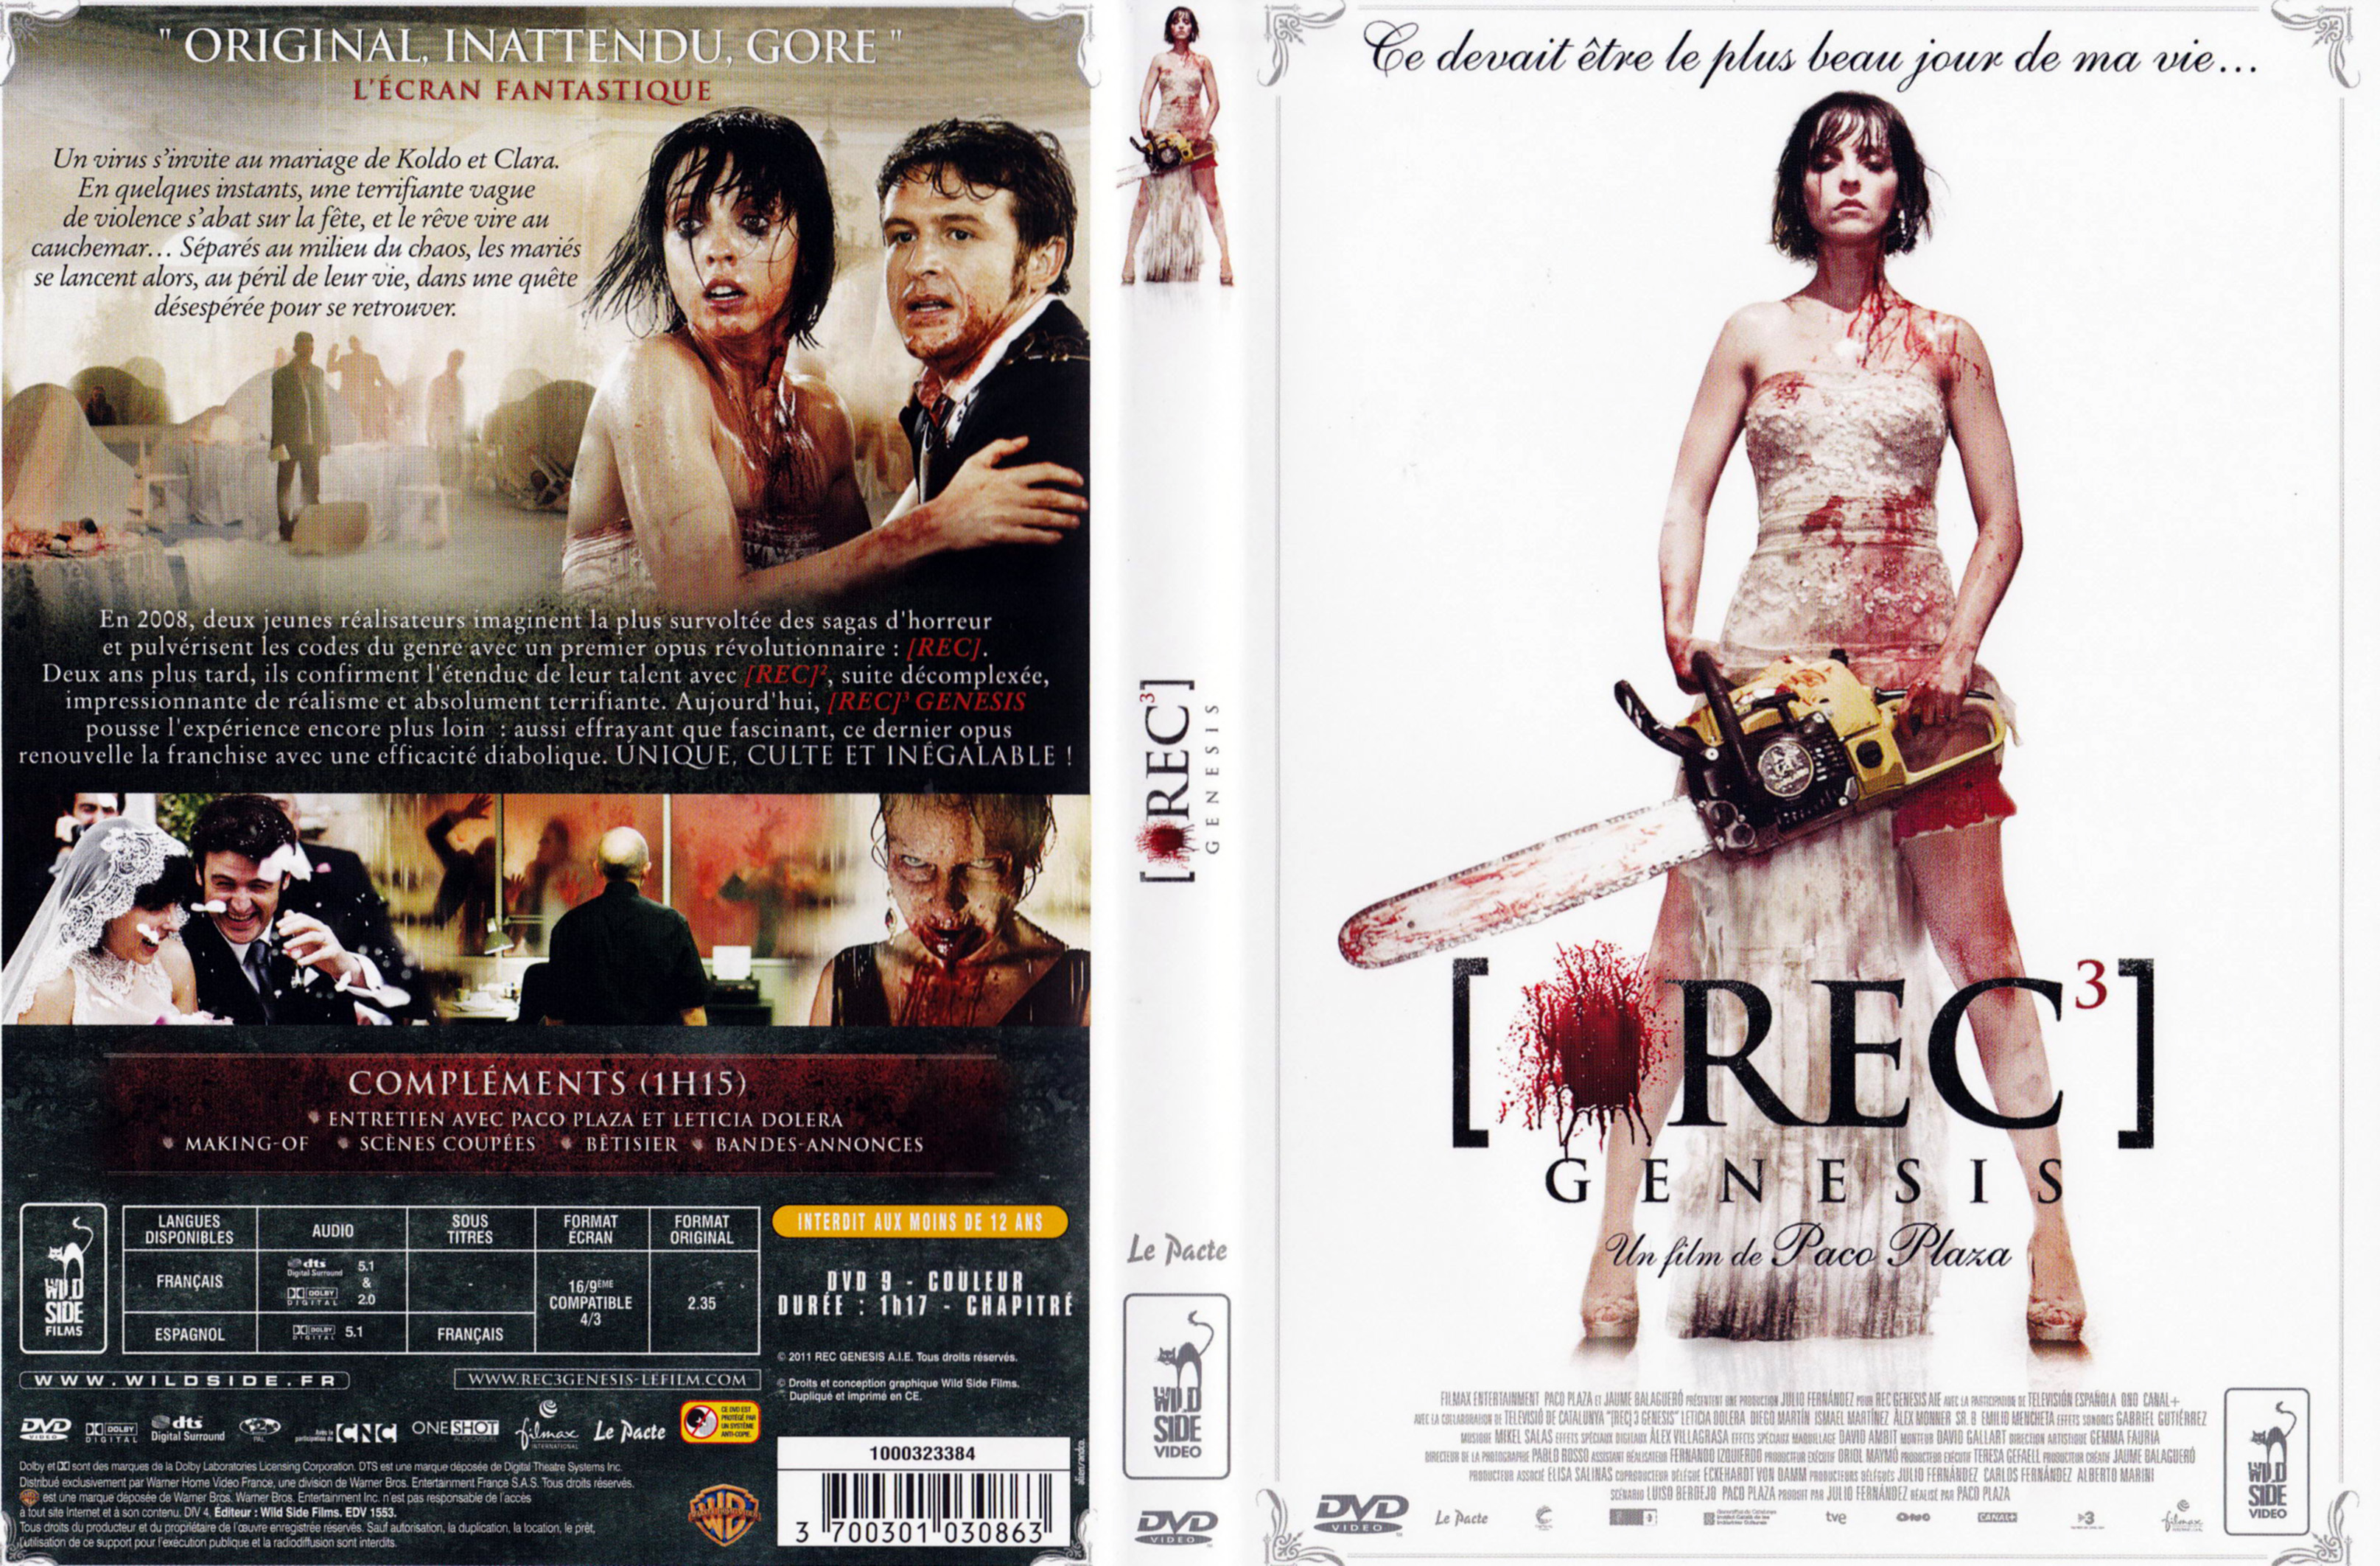 Jaquette DVD [REC]3 Gnesis